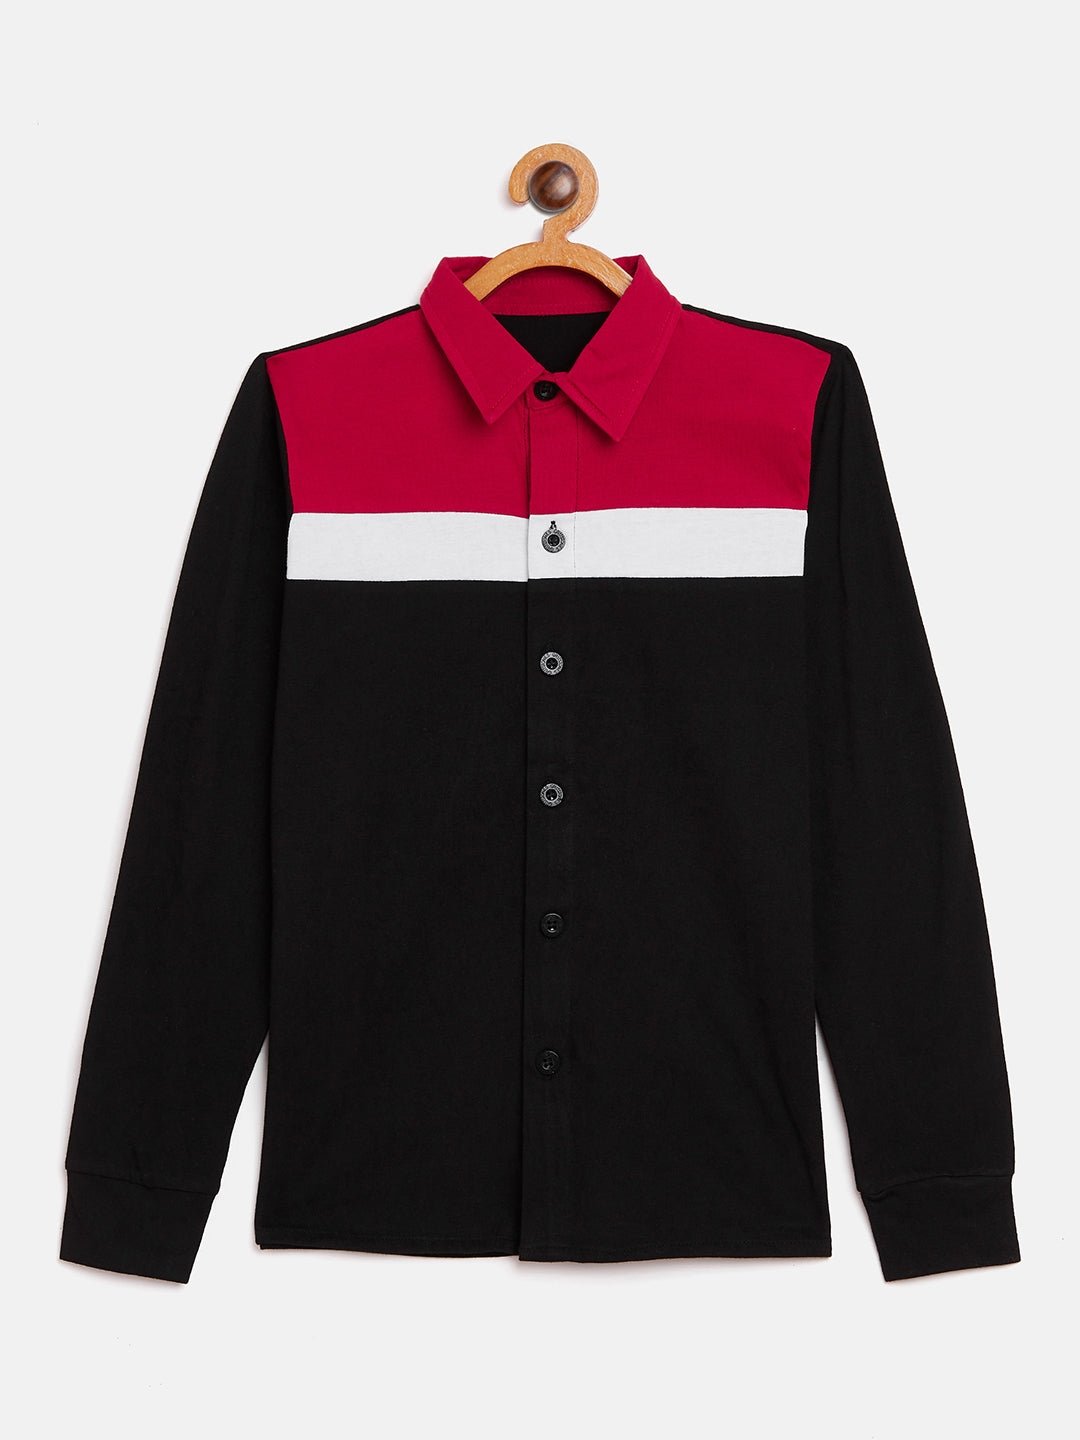 Black/Red/White Kids Full Sleeves Color Block Shirt